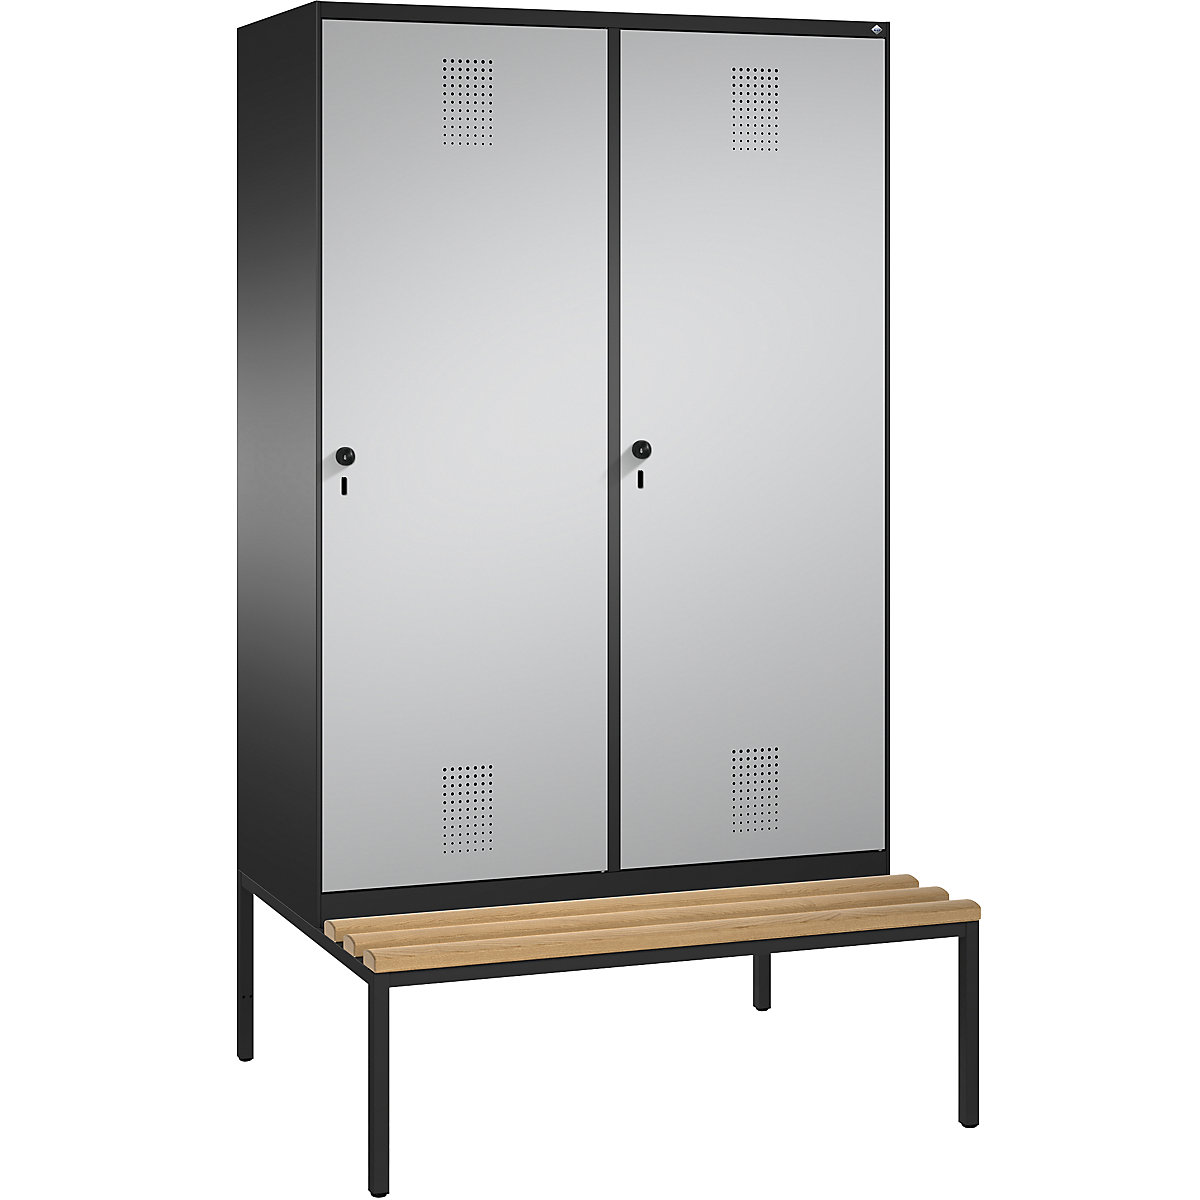 Šatní skříň s lavicí EVOLO s dveřmi přes 2 oddíly – C+P, 4 oddíly, 2 dveře, šířka oddílu 300 mm, černošedá / bílý hliník-4